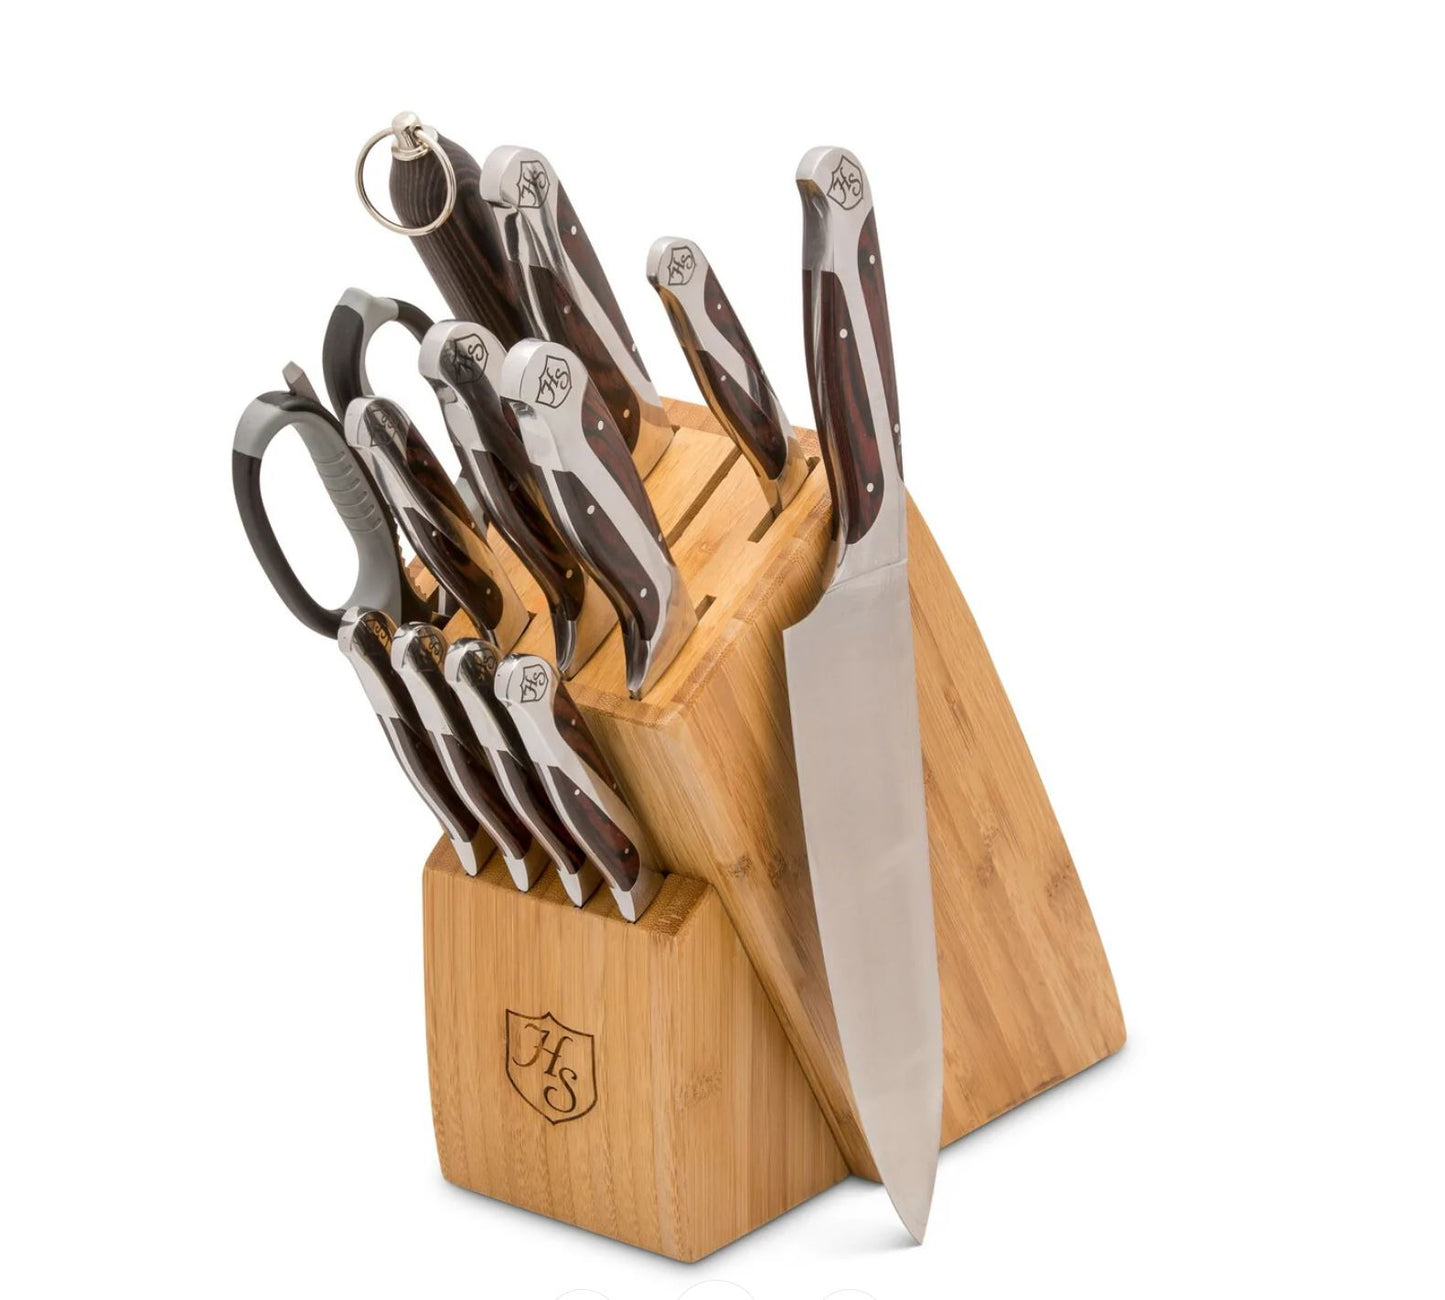 12 Piece Cutlery Essentials Set with Block